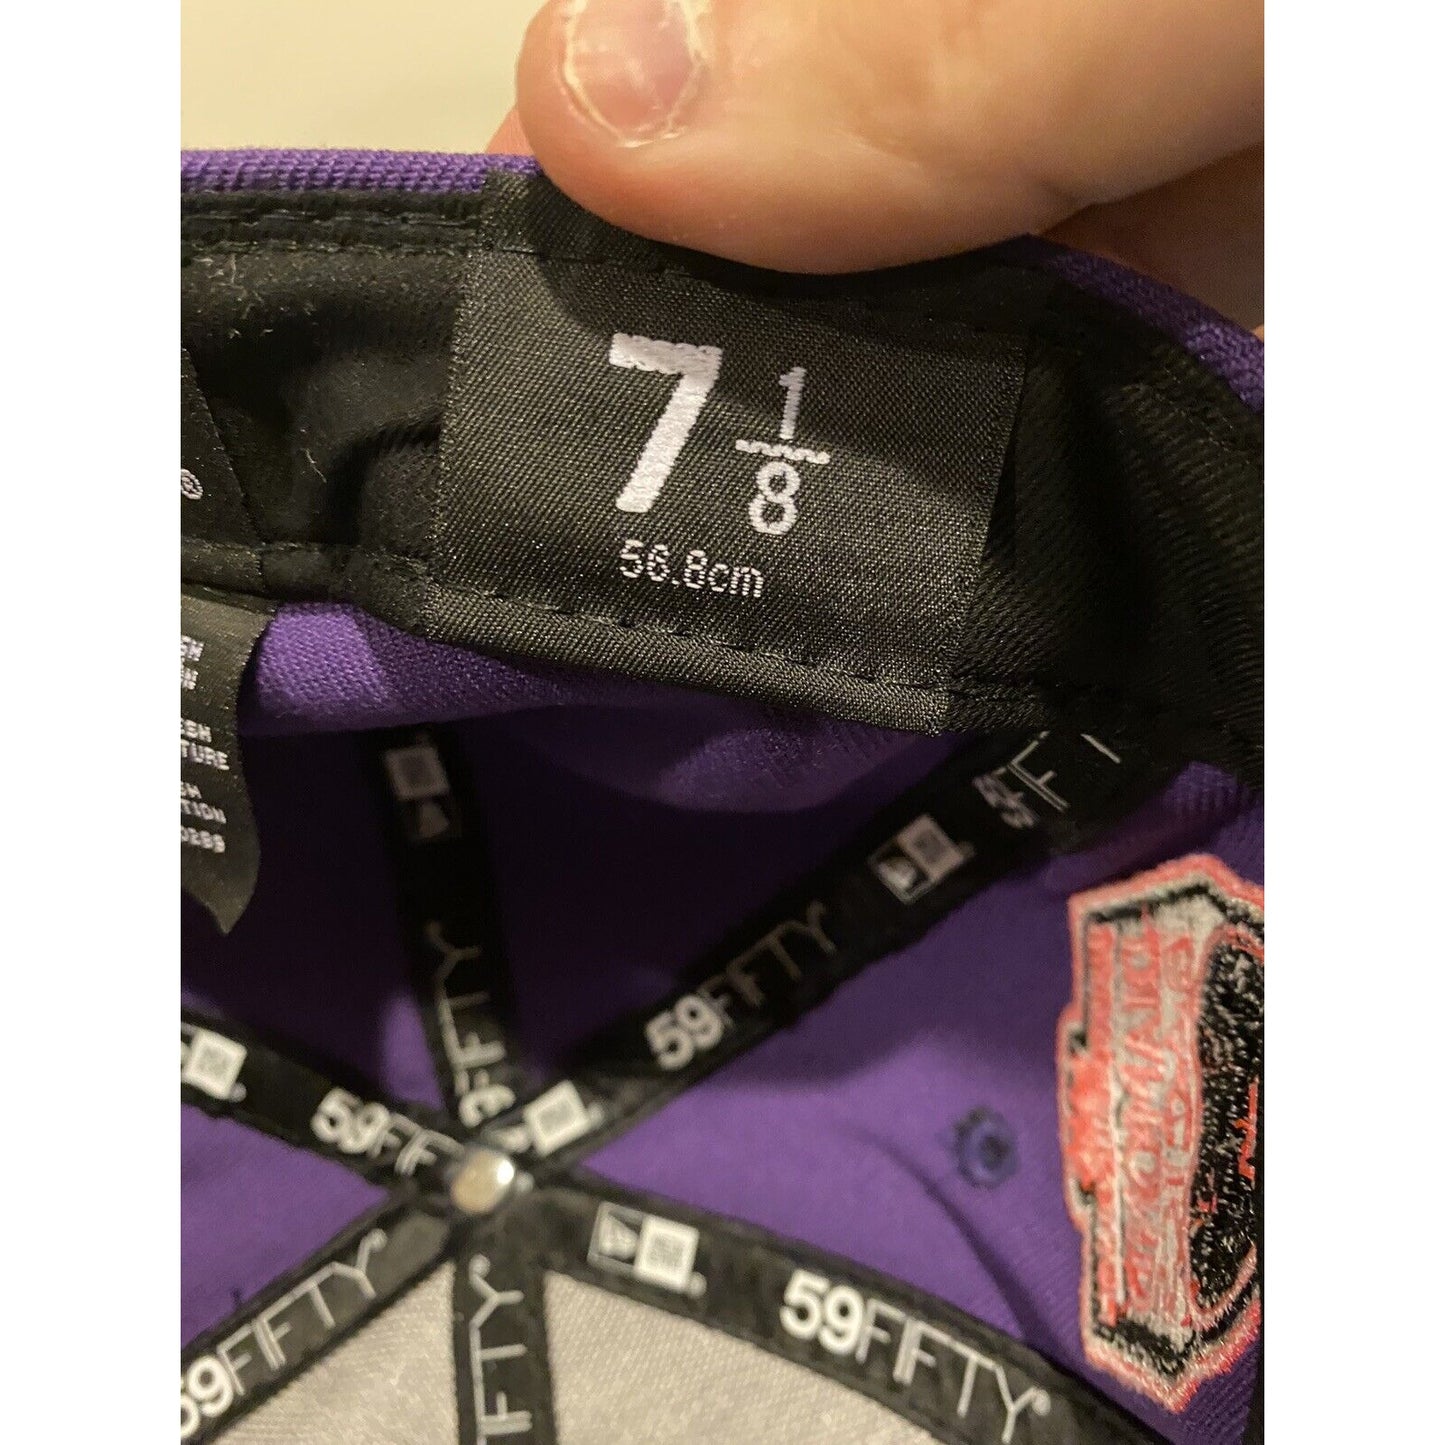 New Era 59Fifty Arizona Diamondbacks Purple/Pink Glow 98 patch fitted hat 7 1/8